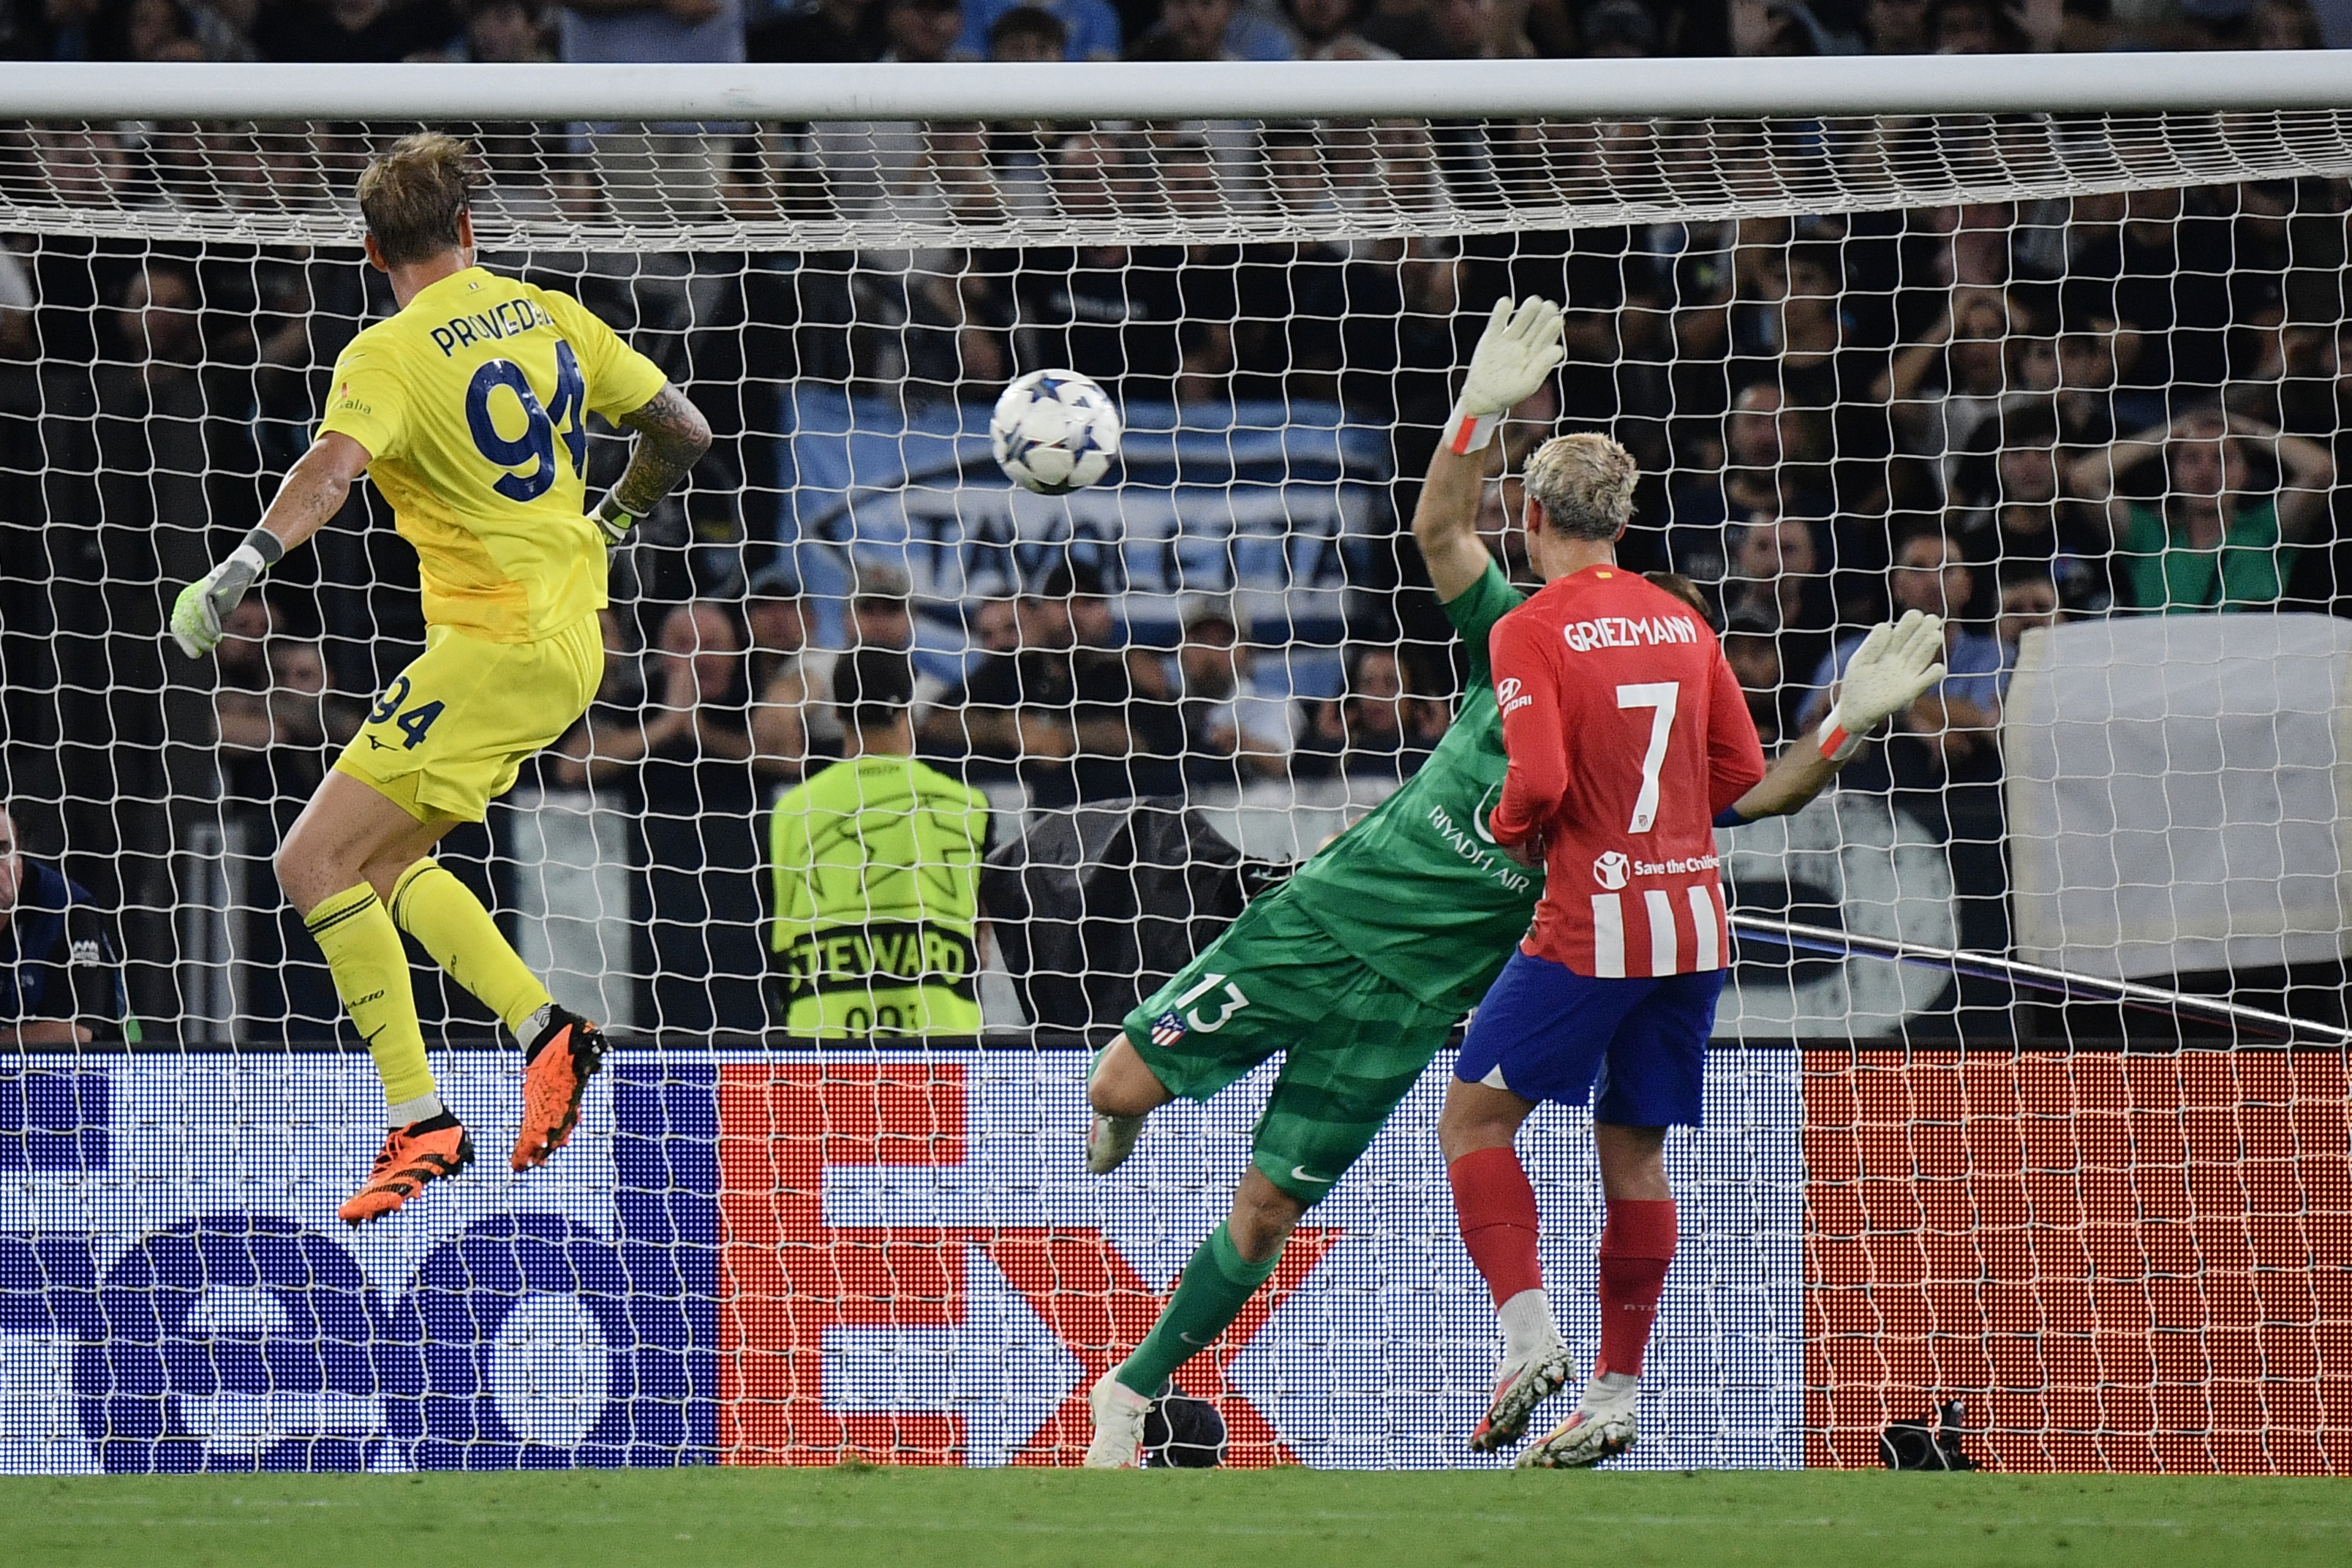 Provedel conectó de cabeza y puso el 1-1 para la Lazio ante el Atlético de Madrid. | Foto: AFP.